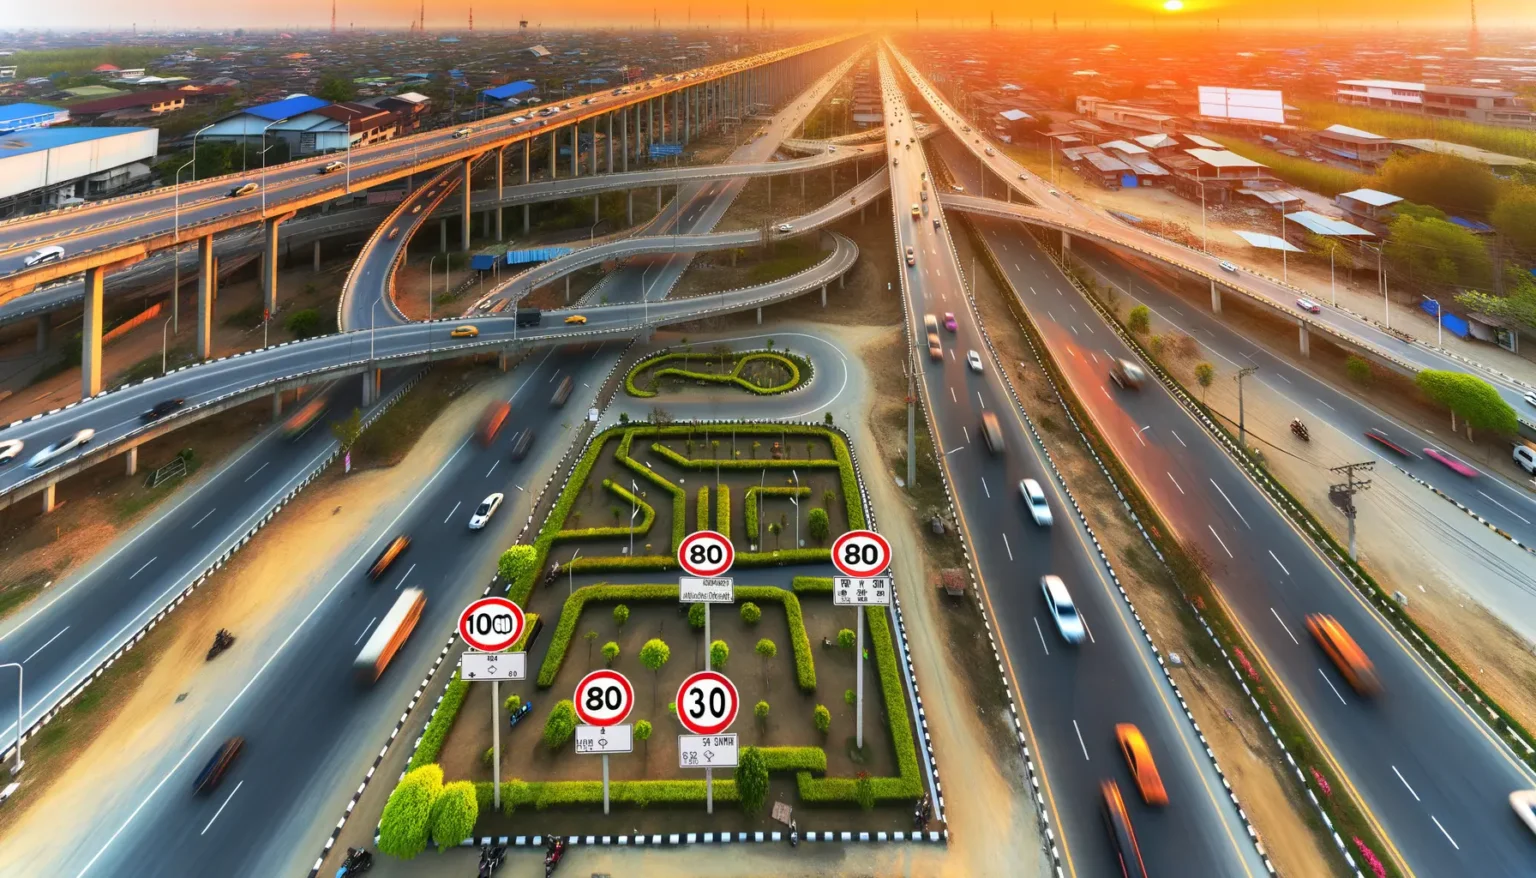 Luftaufnahme eines komplexen Autobahnkreuzes bei Sonnenuntergang mit dynamischen Fahrzeugbewegungen und einem grün gestalteten Labyrinth in der Mitte, das von zahlreichen Geschwindigkeitsschildern umgeben ist.